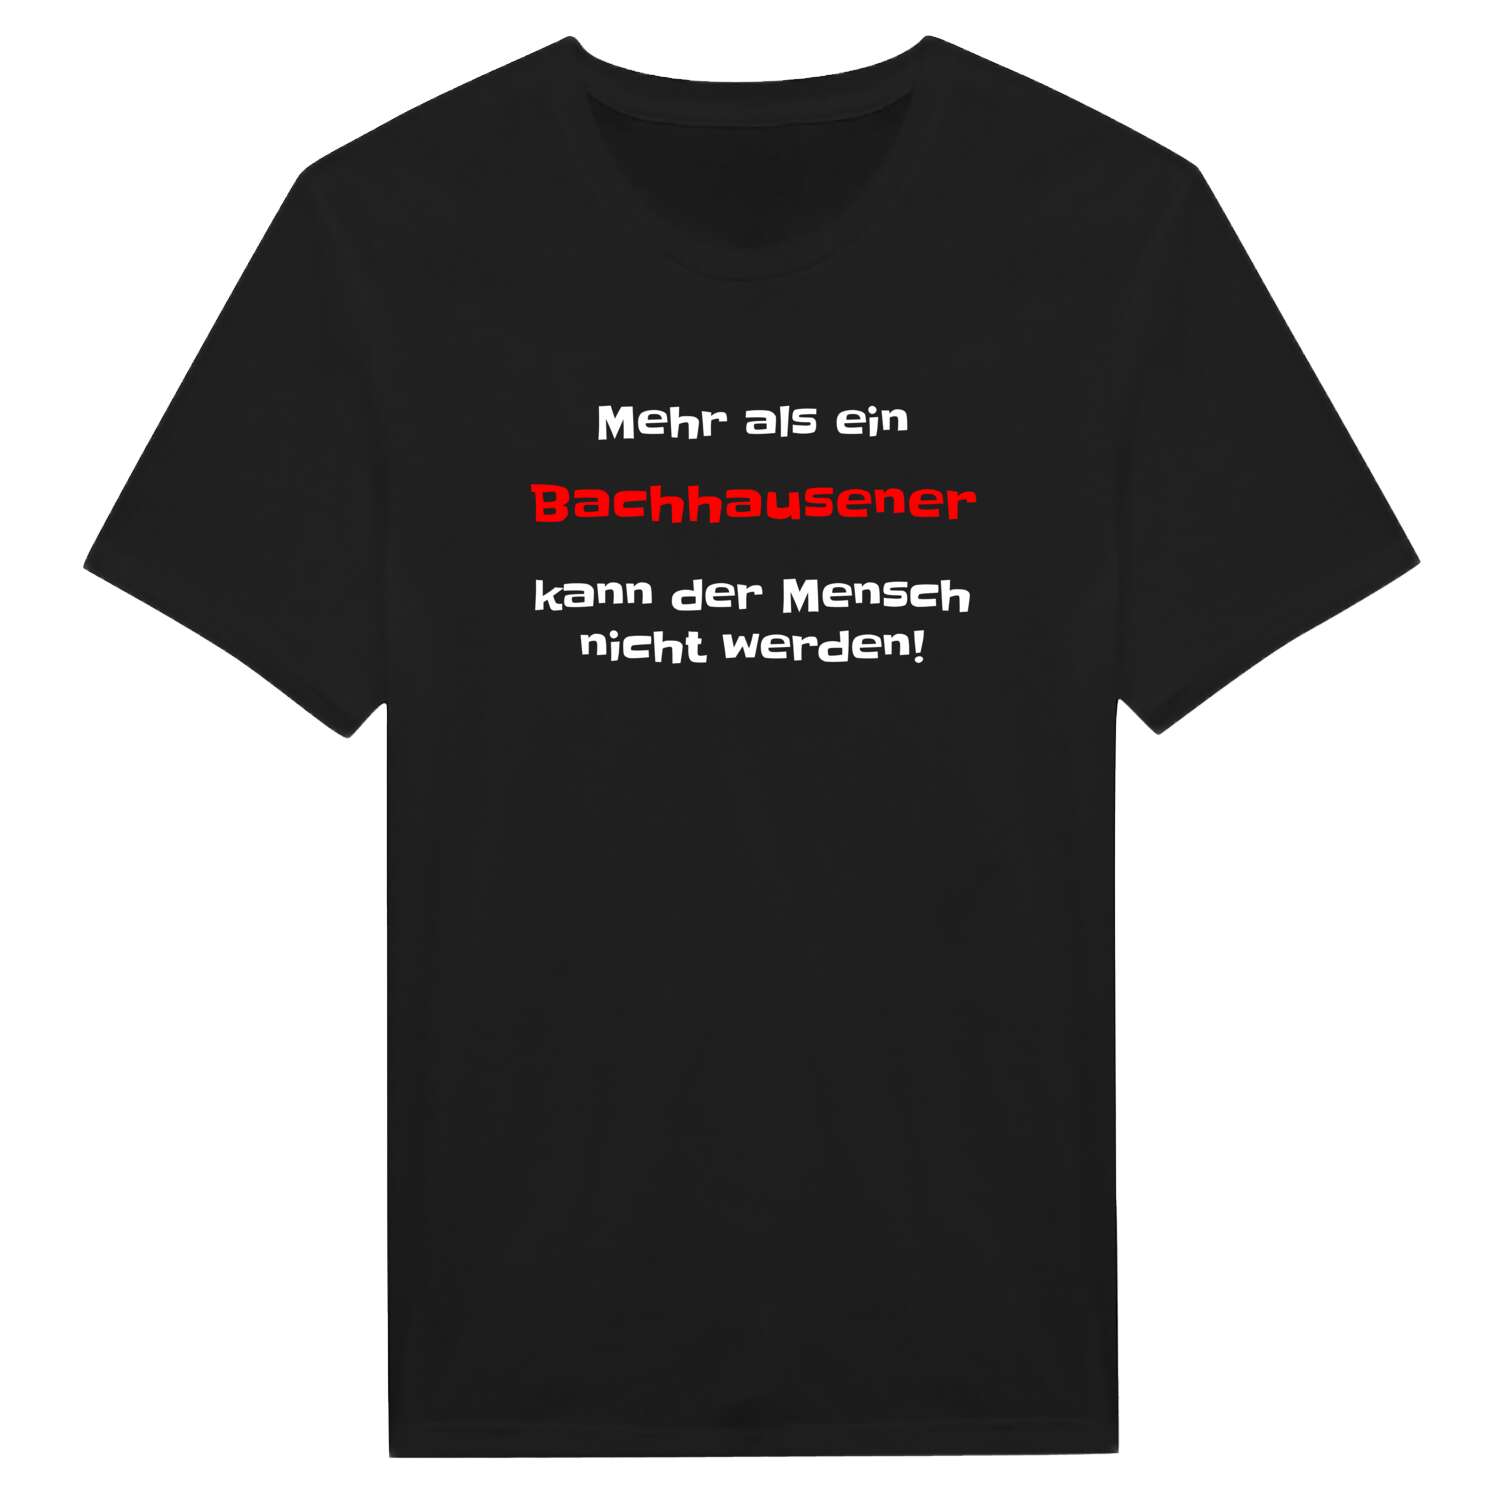 Bachhausen T-Shirt »Mehr als ein«